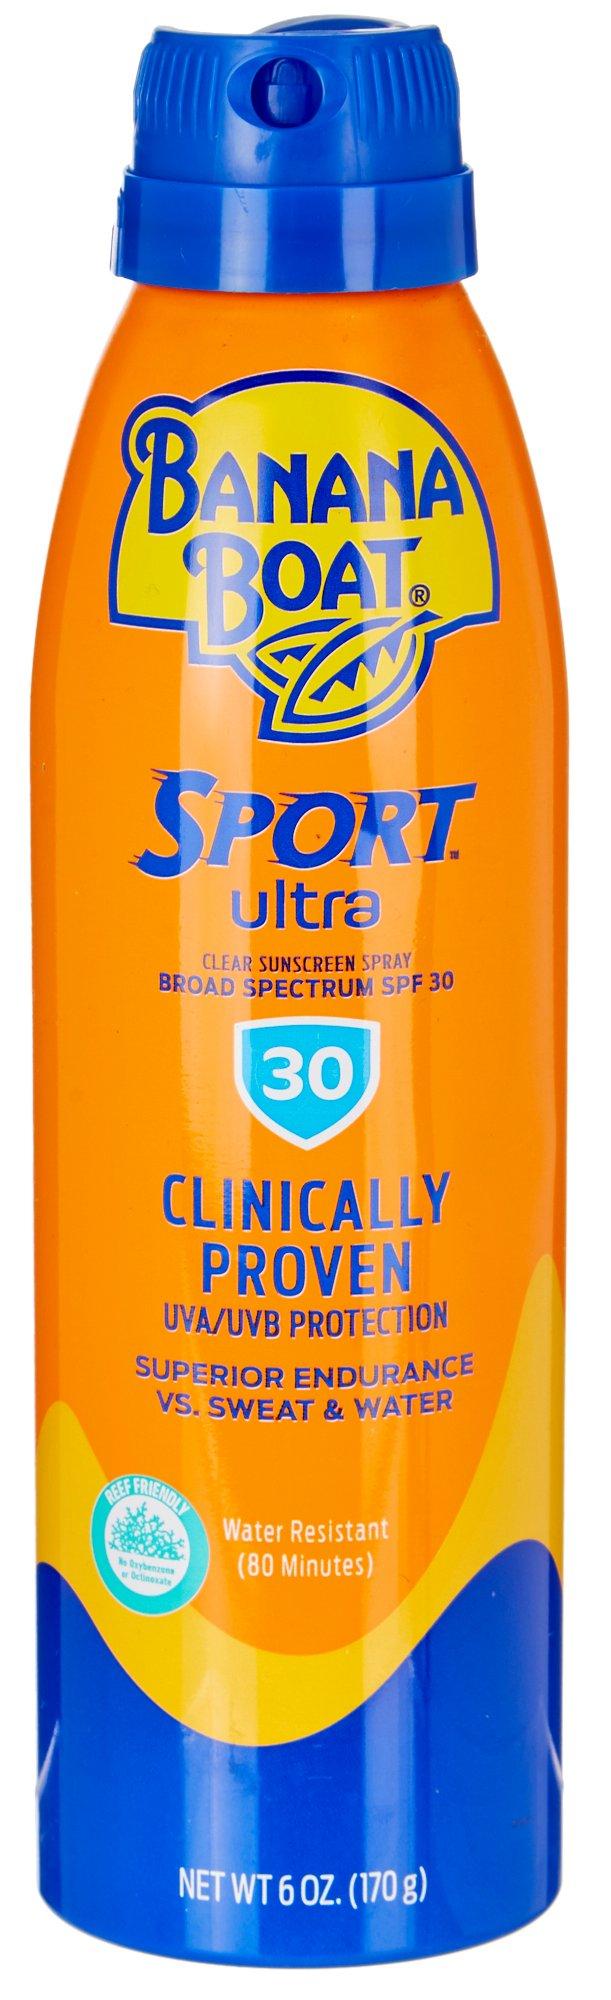 Banana Boat Sport Ultra SPF 30 Clear Sunscreen Spray